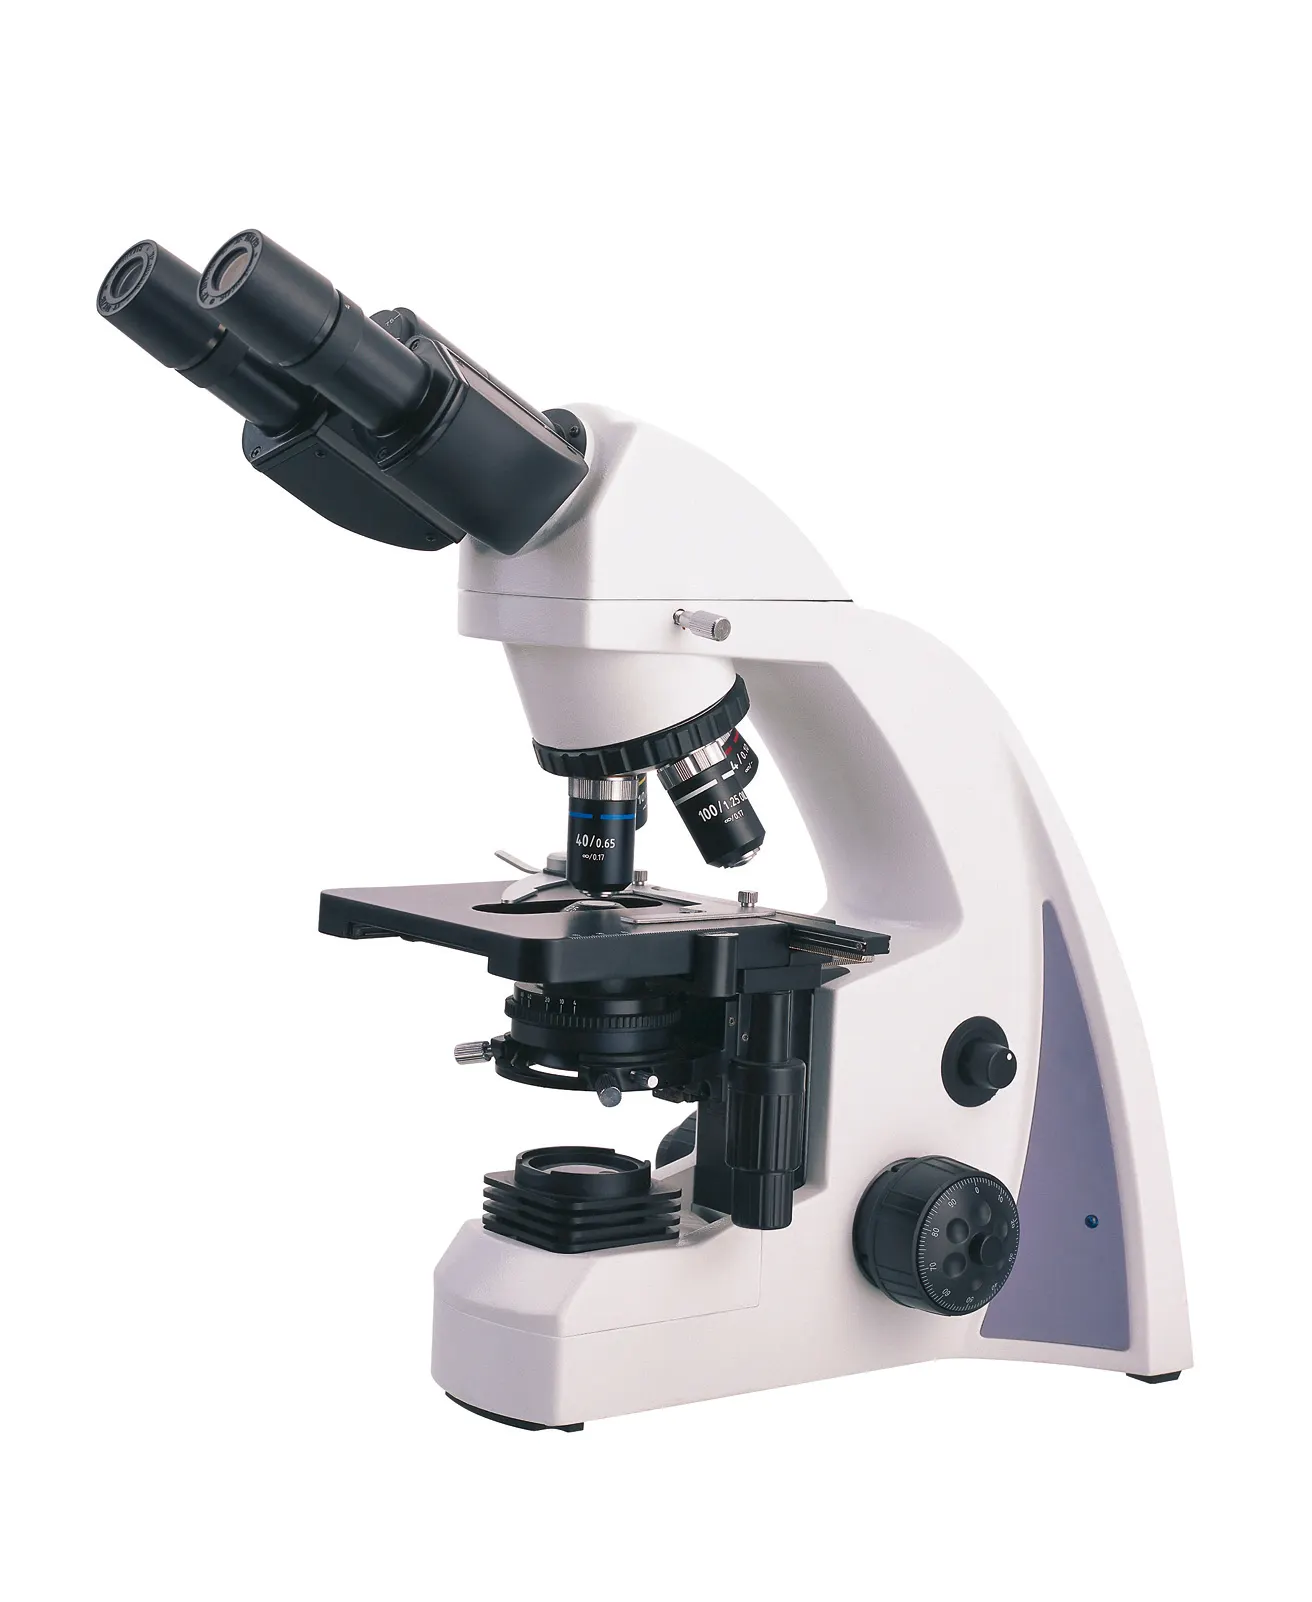 Biyolojik dijital mikroskop Seidentopf dürbün Infinity optik sistemi laboratuvar için